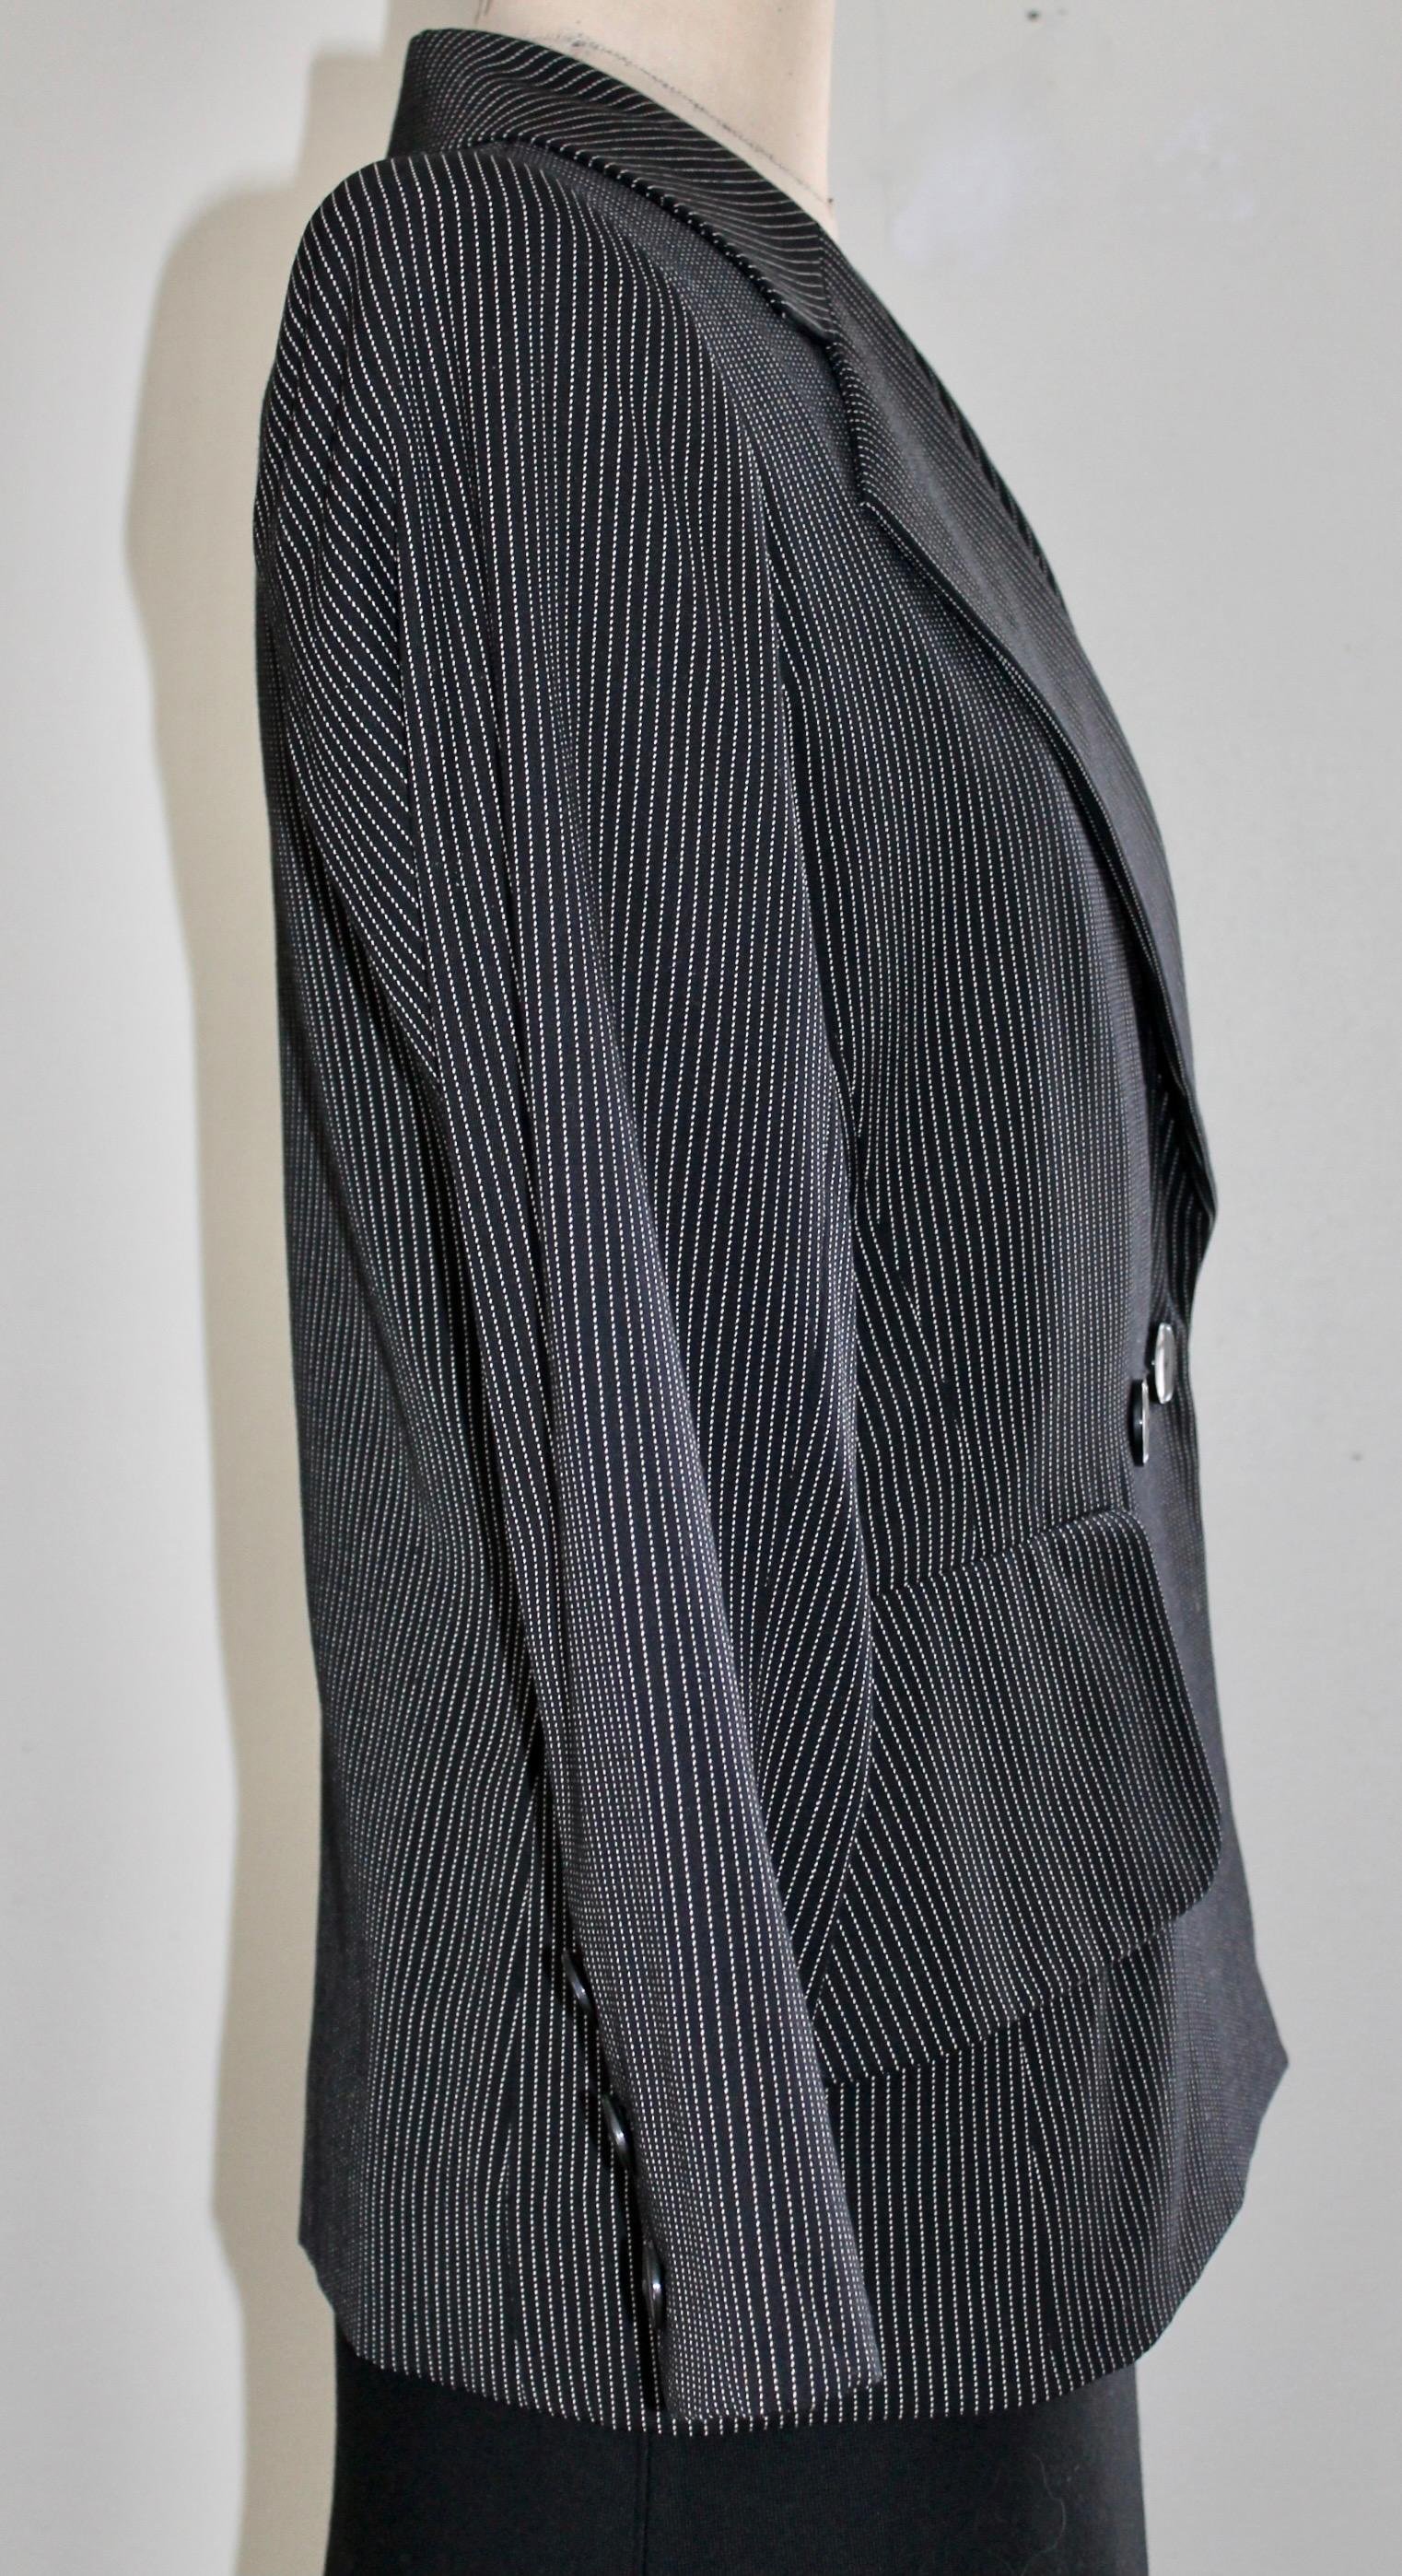 Yves Saint Laurent Rive Gauche Pin Strip Pants Suit 1980's For Sale 1